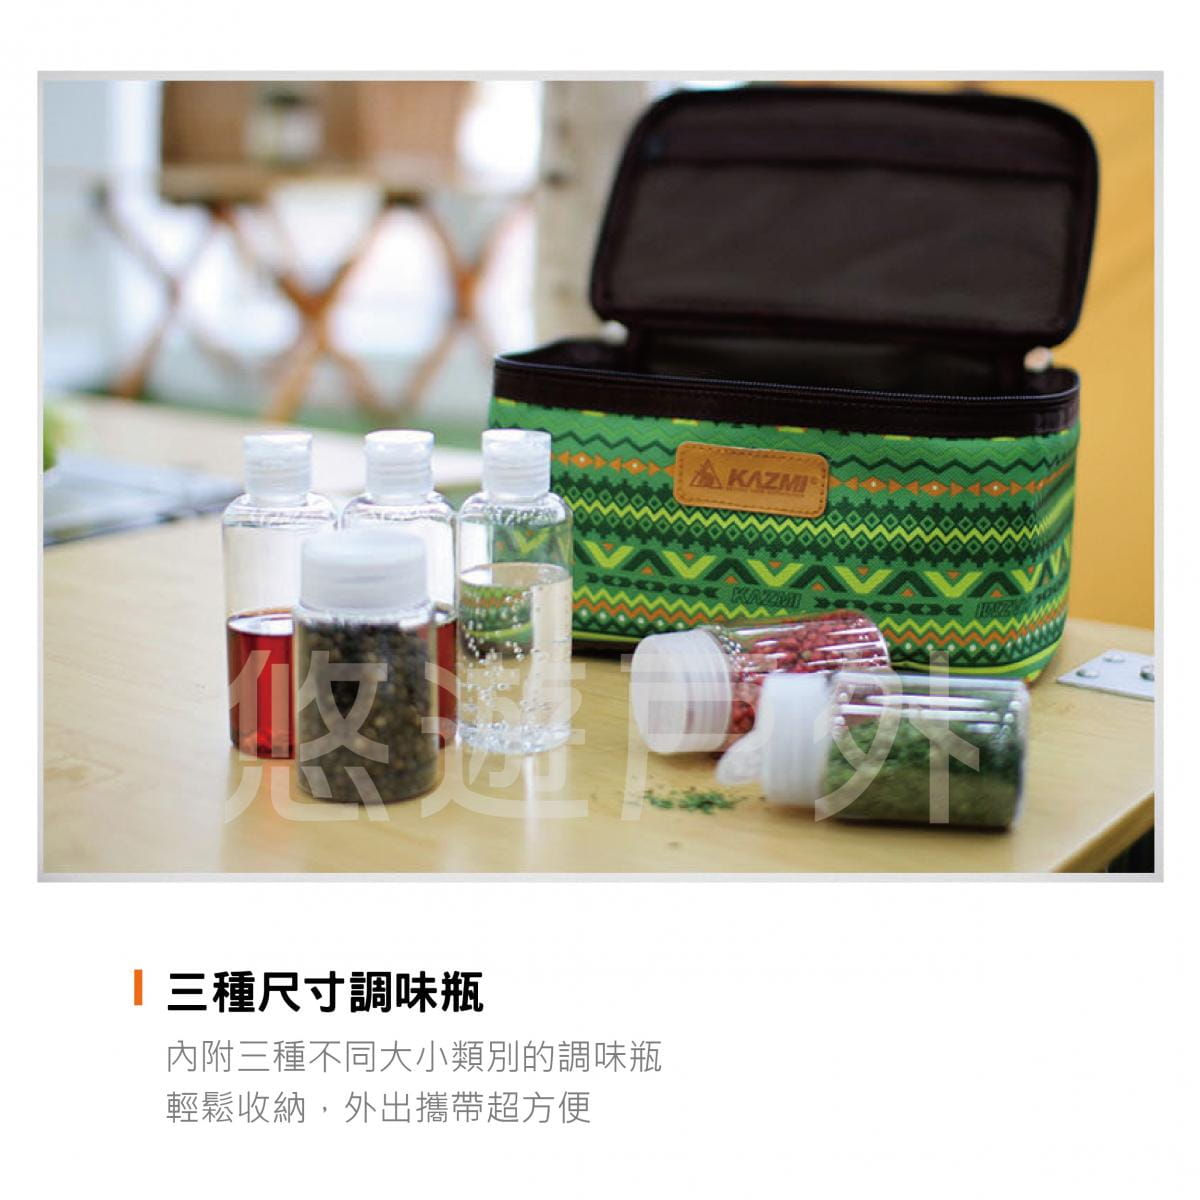 【悠遊戶外】KAZMI KZM 經典民族風調味料收納袋(L)-綠色 2